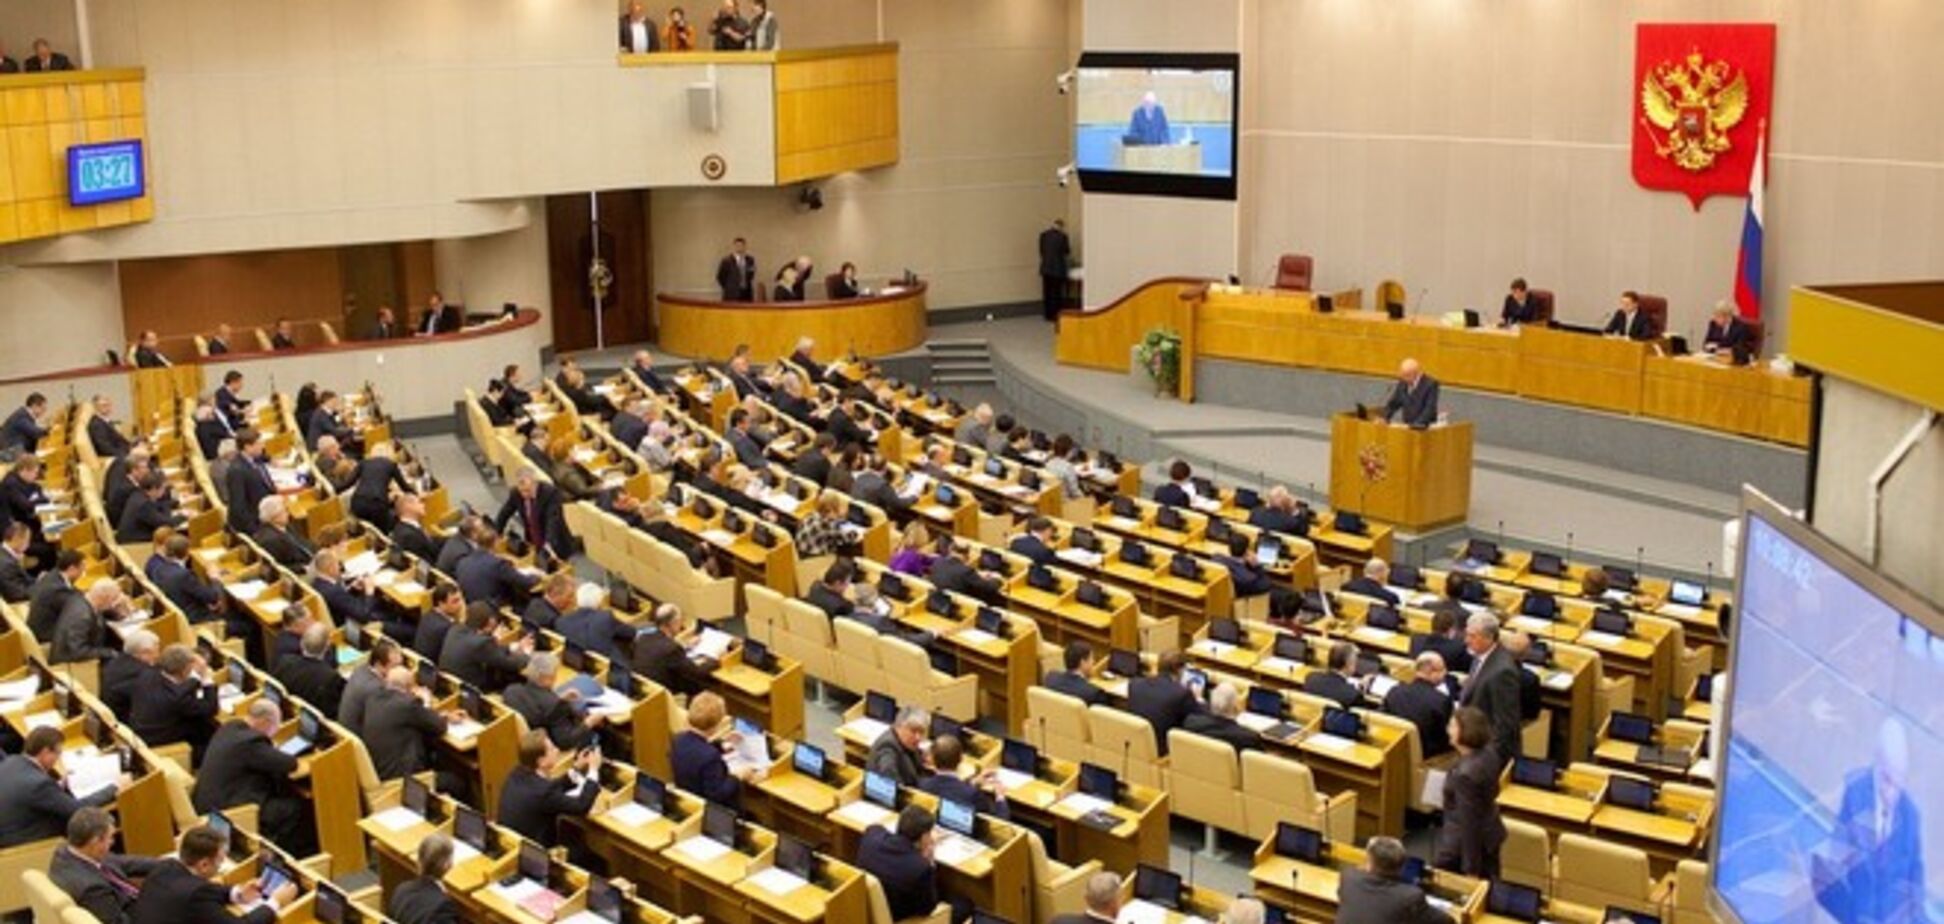 Депутаты группы Курченко едут на заседание Госдумы